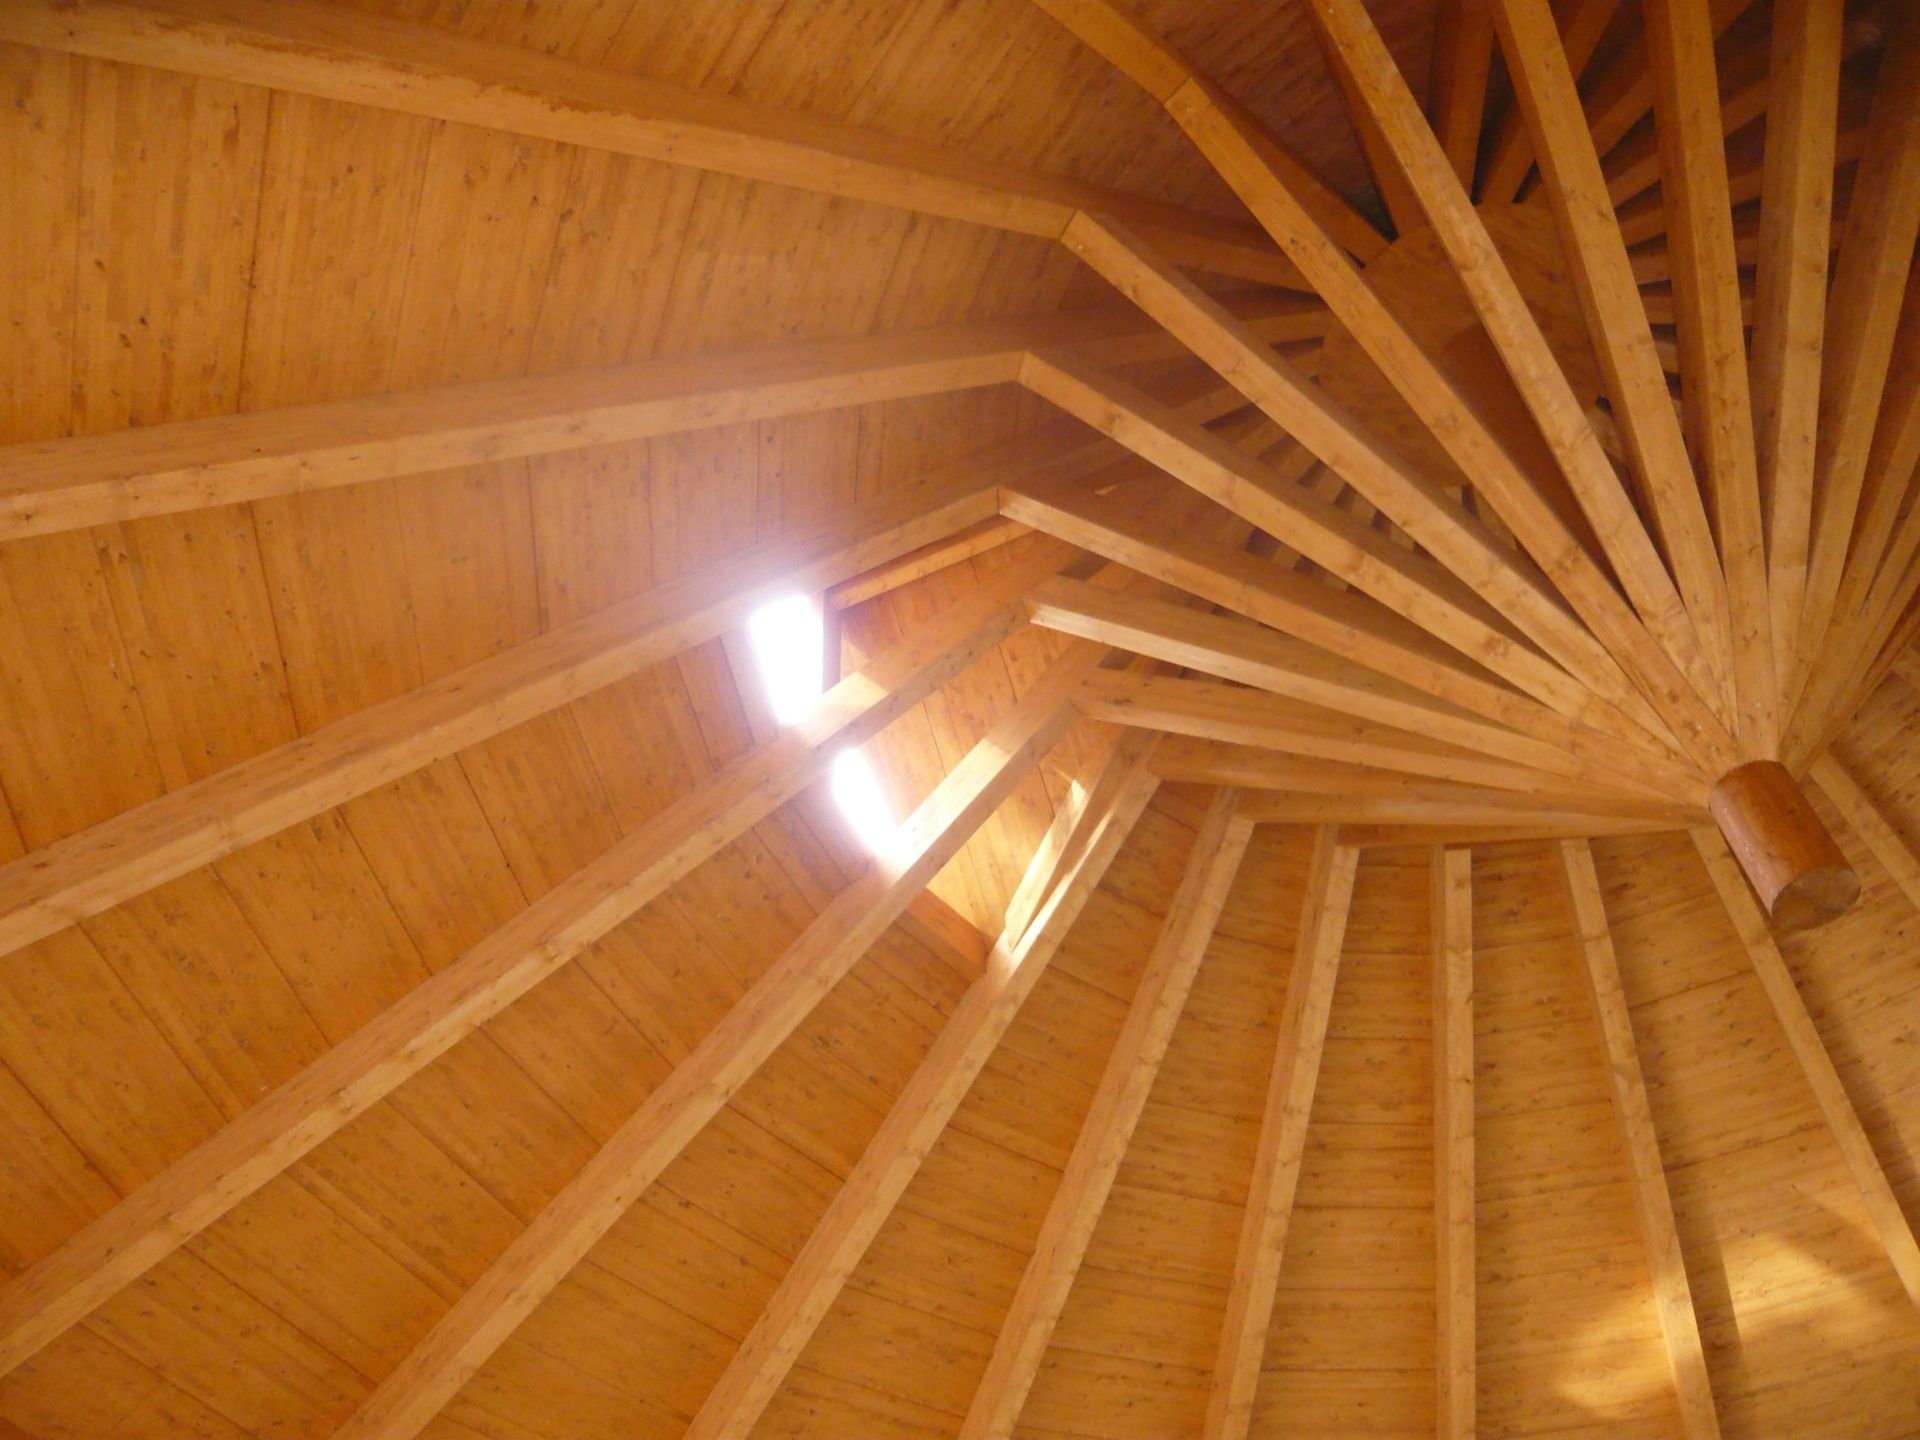 Baite e Chalet in legno Bergamasca Costruzioni Legno Casette Residence Turistico